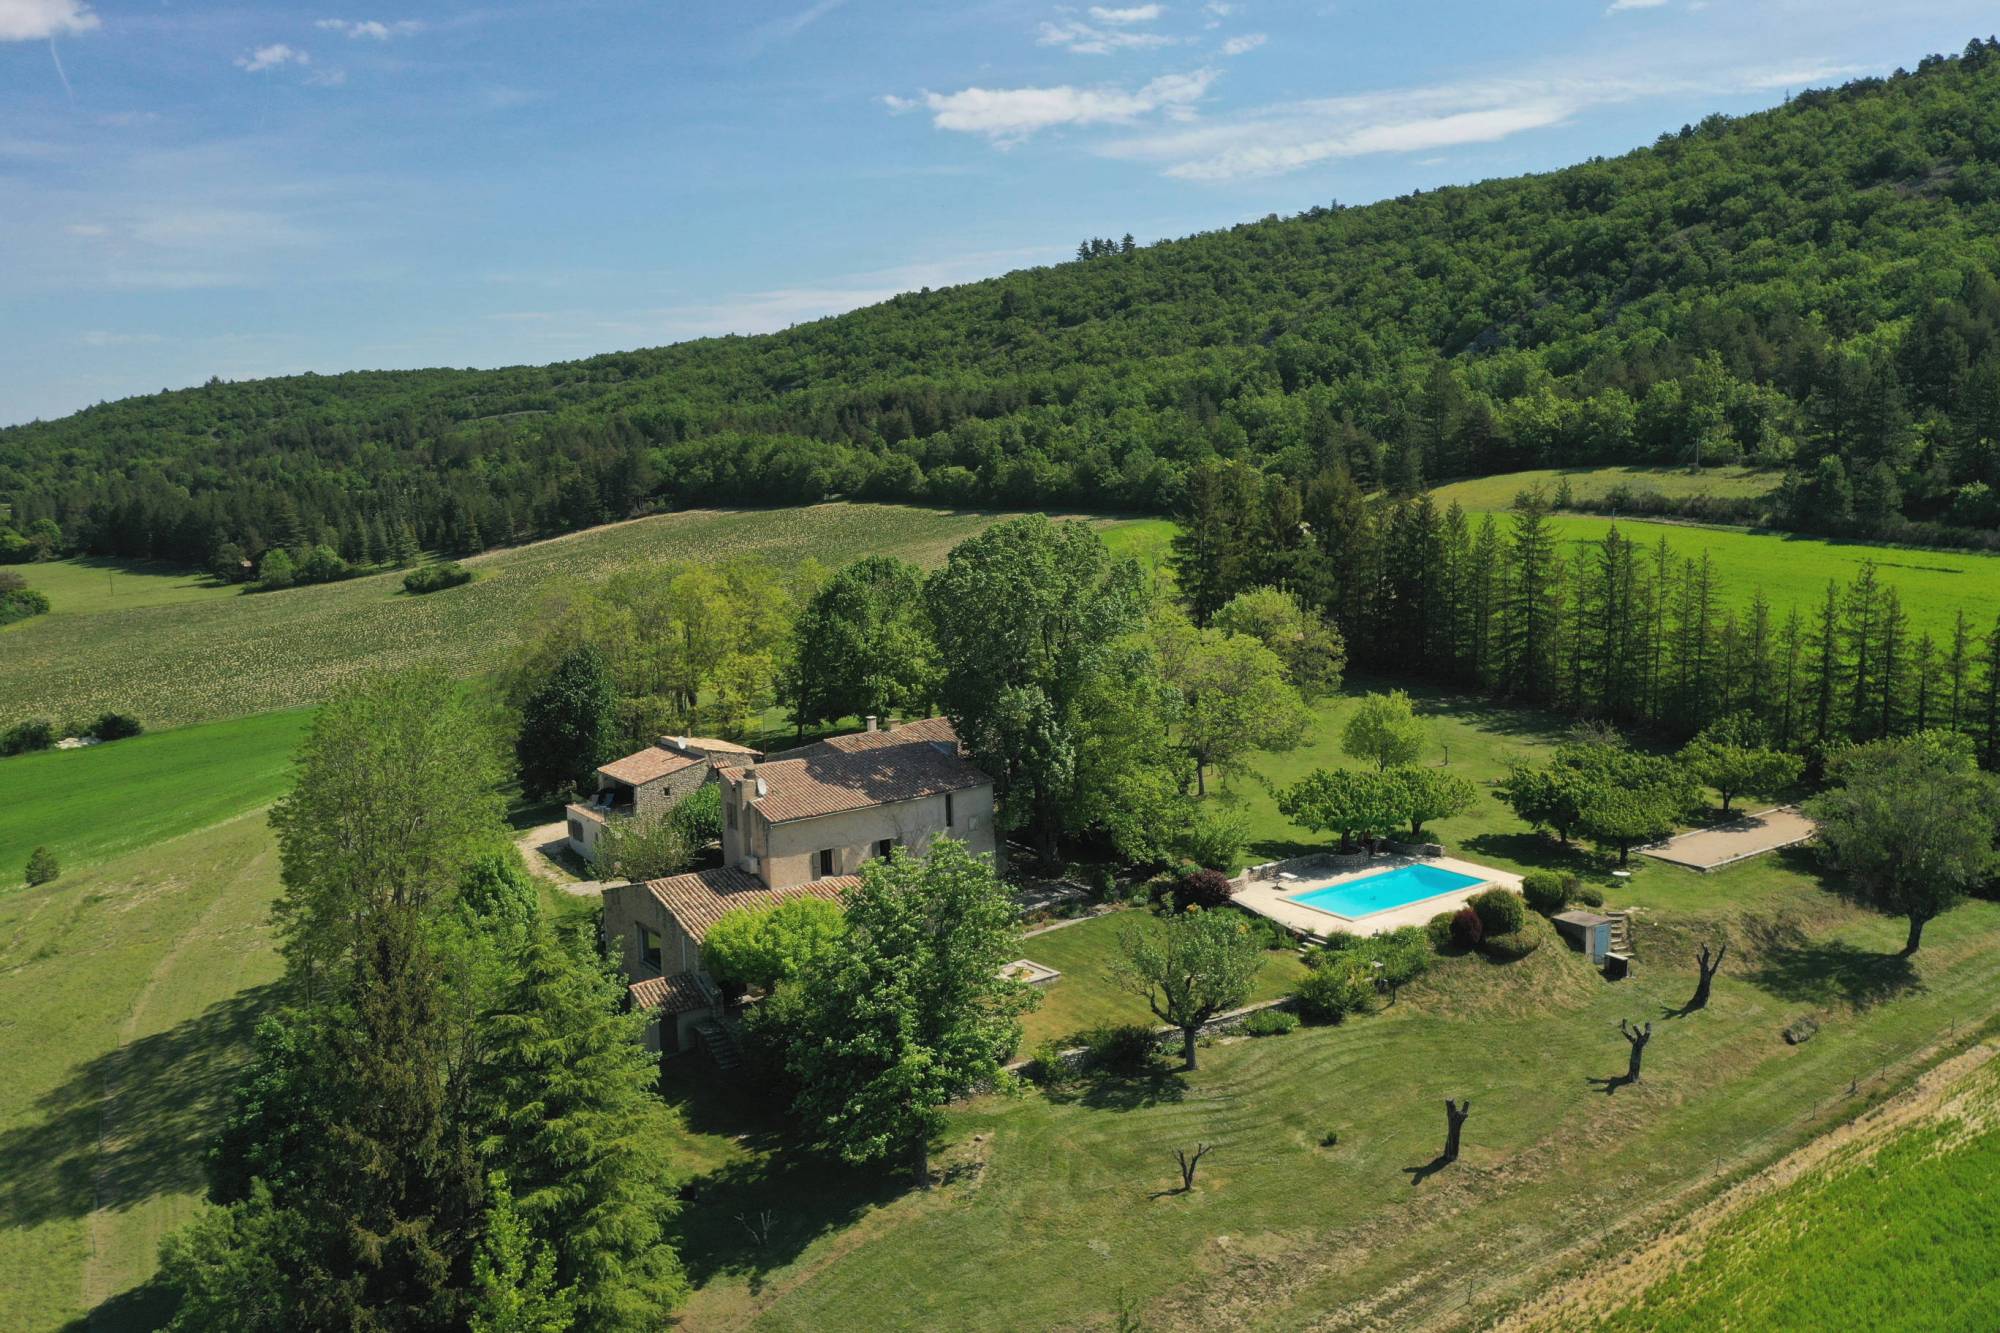 Vente Sault, propriété composée de 3 maisons entièrement rénovées avec piscine, vues panoramiques sur le Mont Ventoux et la vallée. 